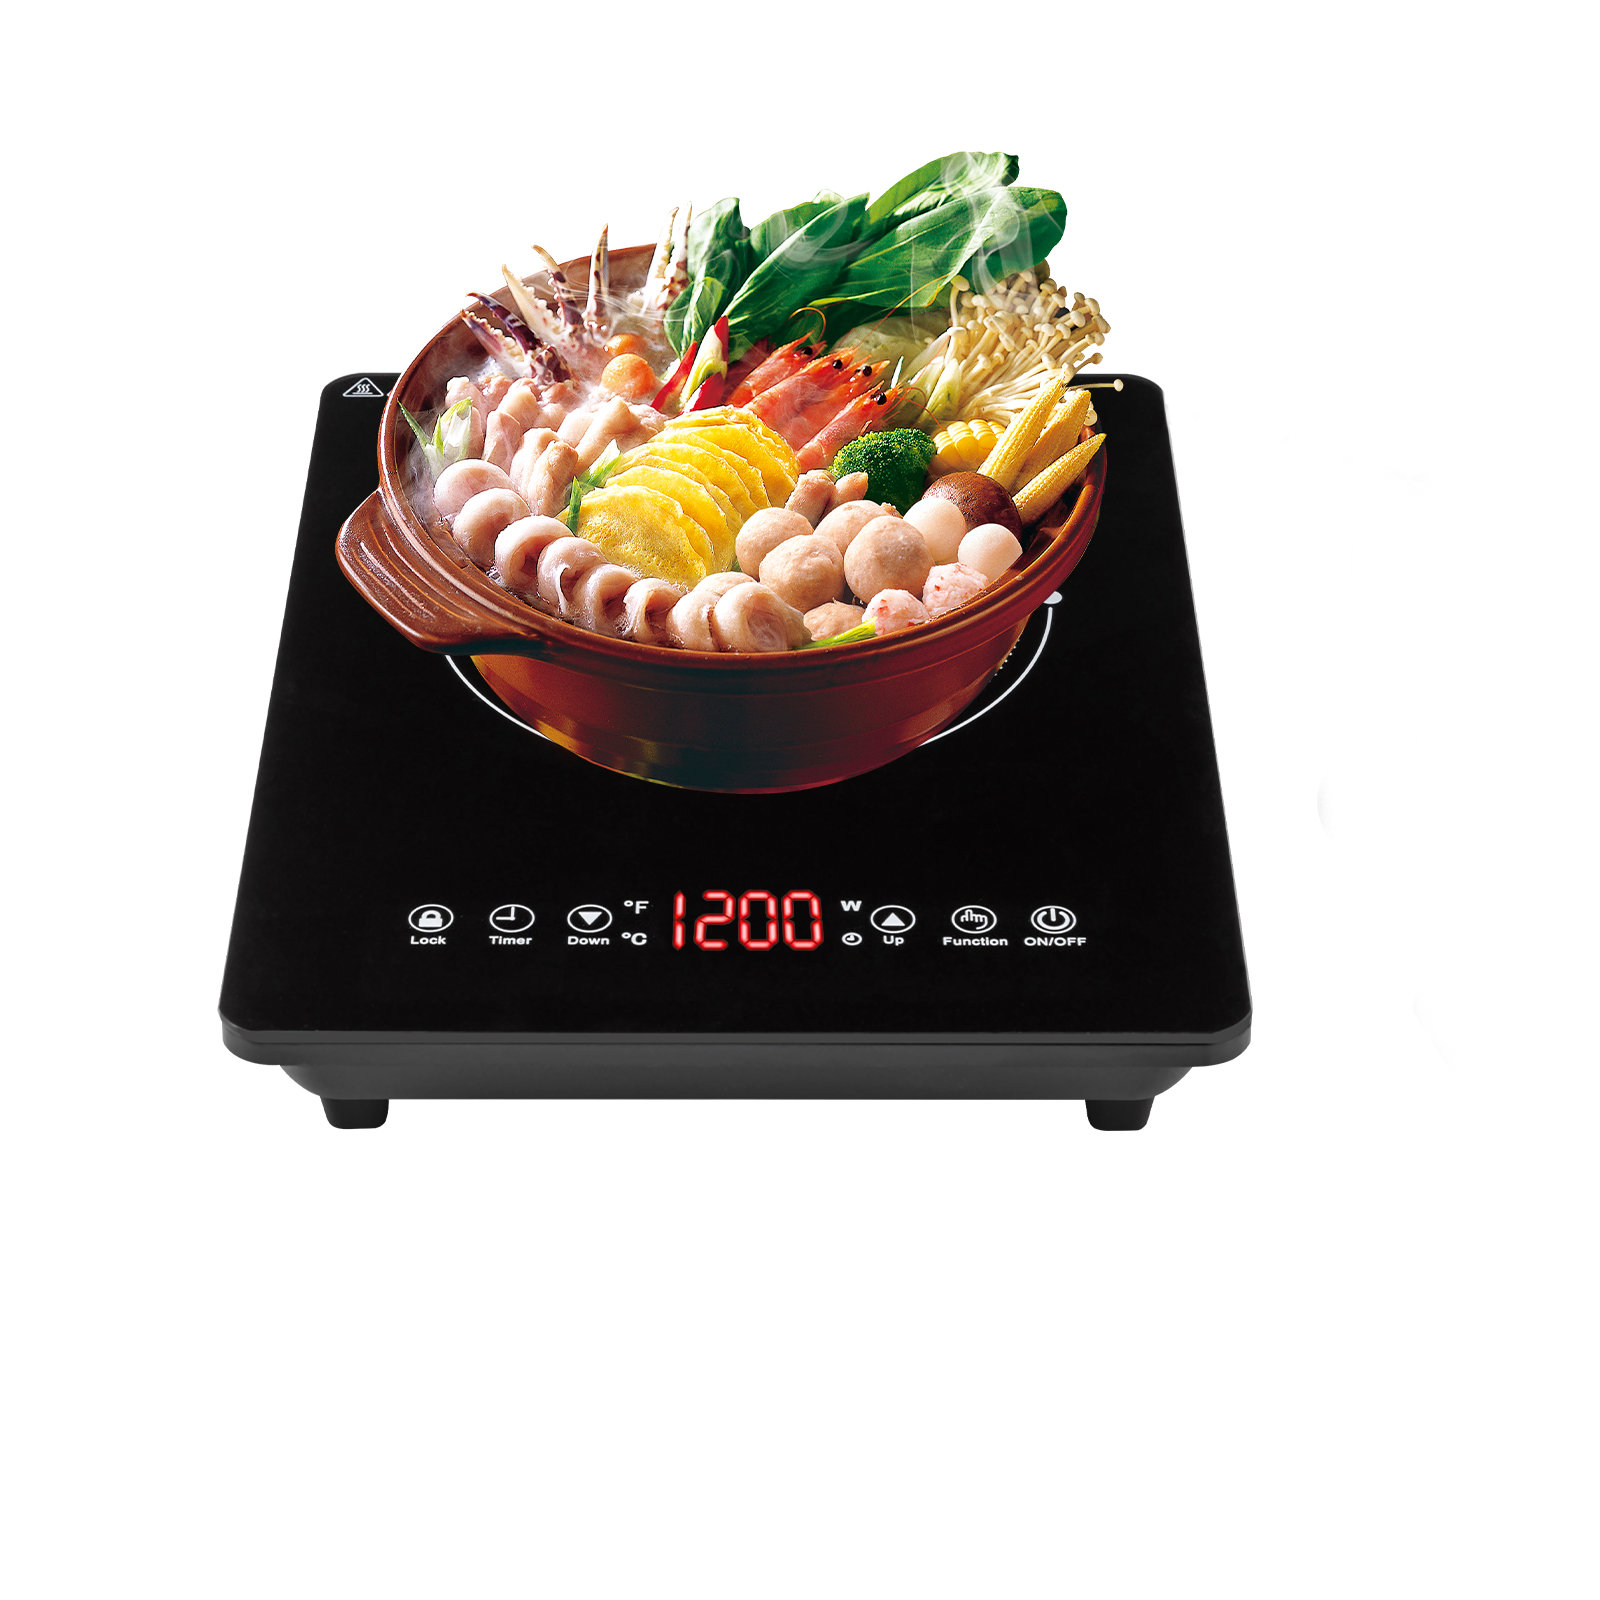 https://assets.wfcdn.com/im/46237734/compr-r85/2526/252659232/1800w-induction-cooktop-cooker-burner-stove-hot-plate.jpg